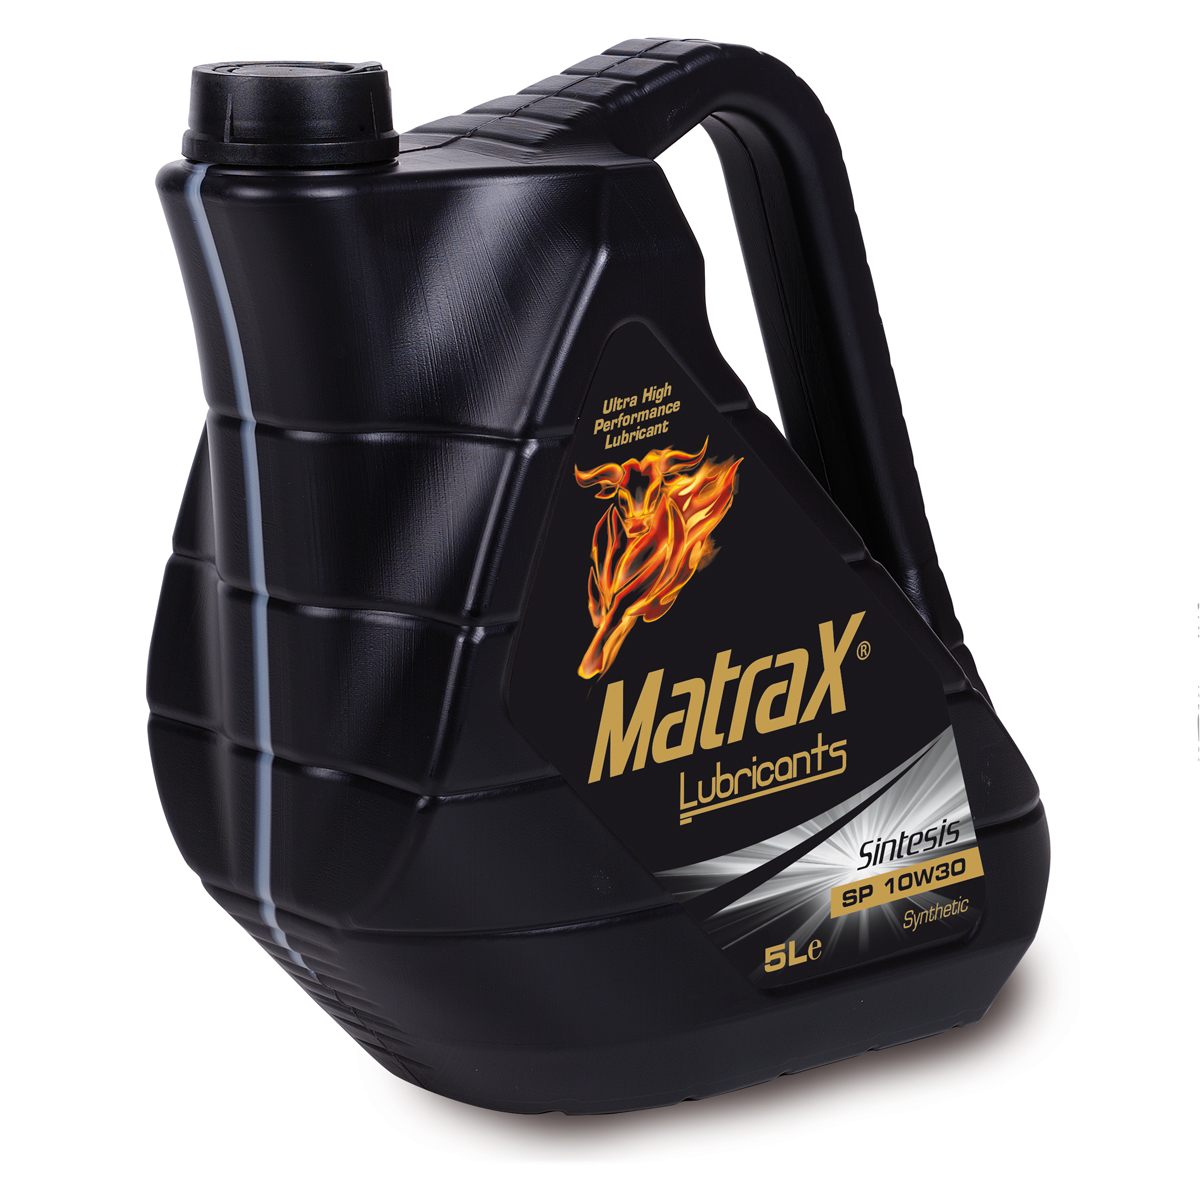 matrax-lubricants-sintesis-sp-10w30-5l